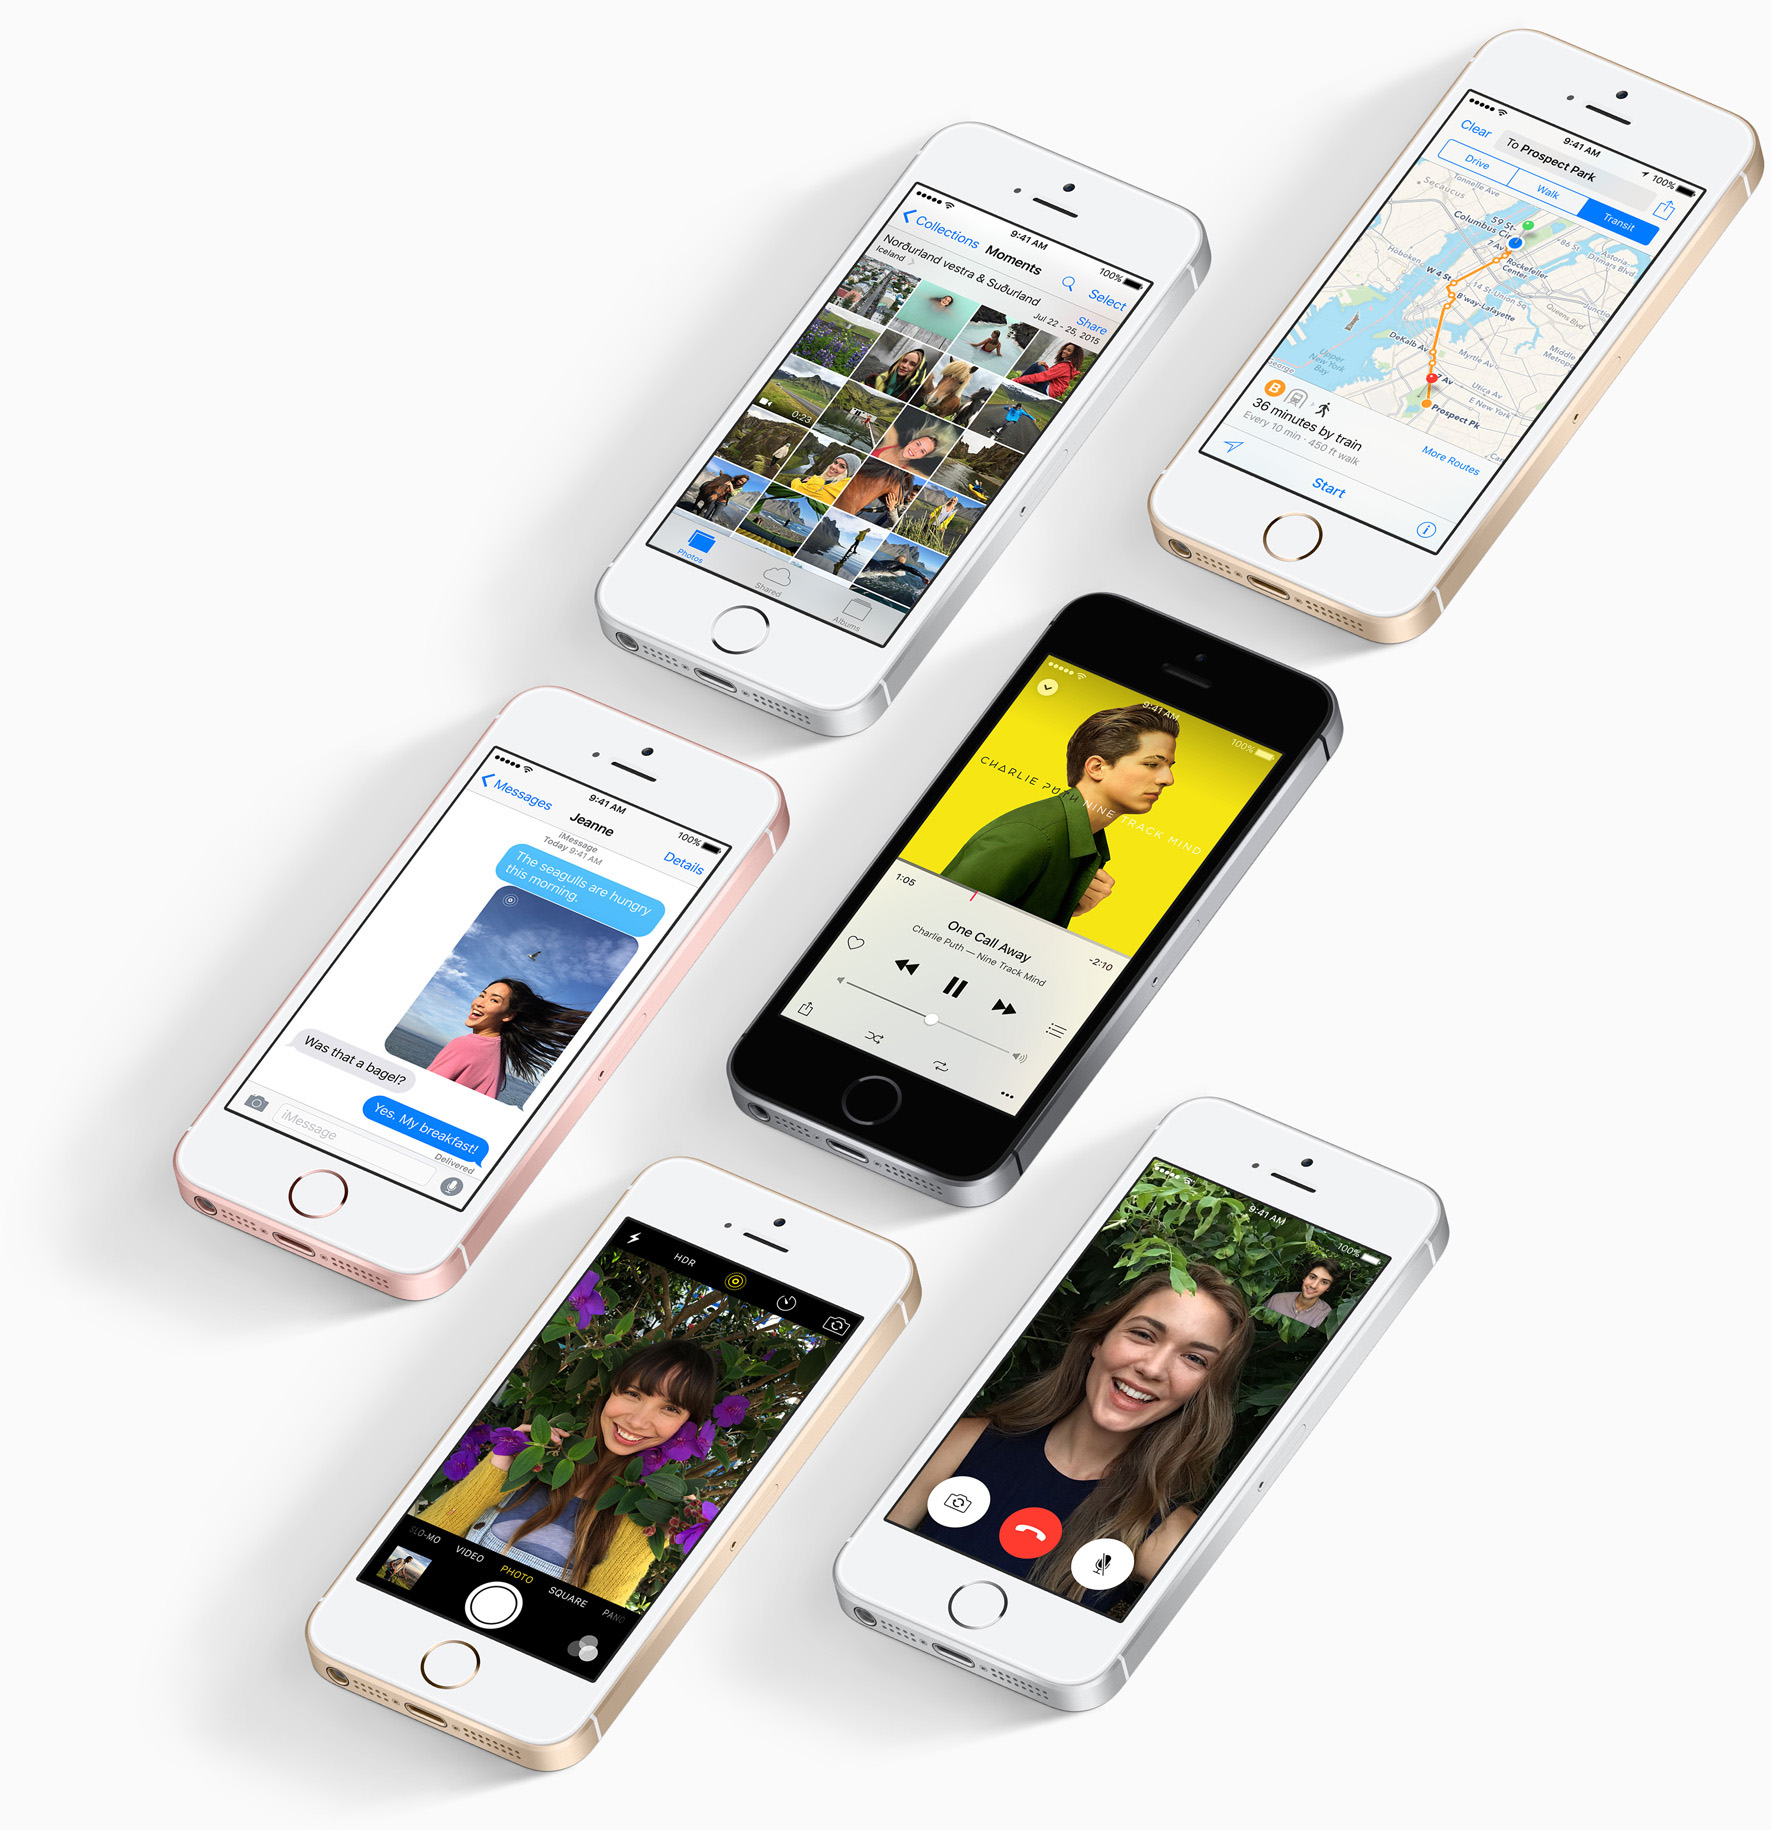 Apple praesentiert guenstiges iPhone SE - Bildergalerie Bild 6